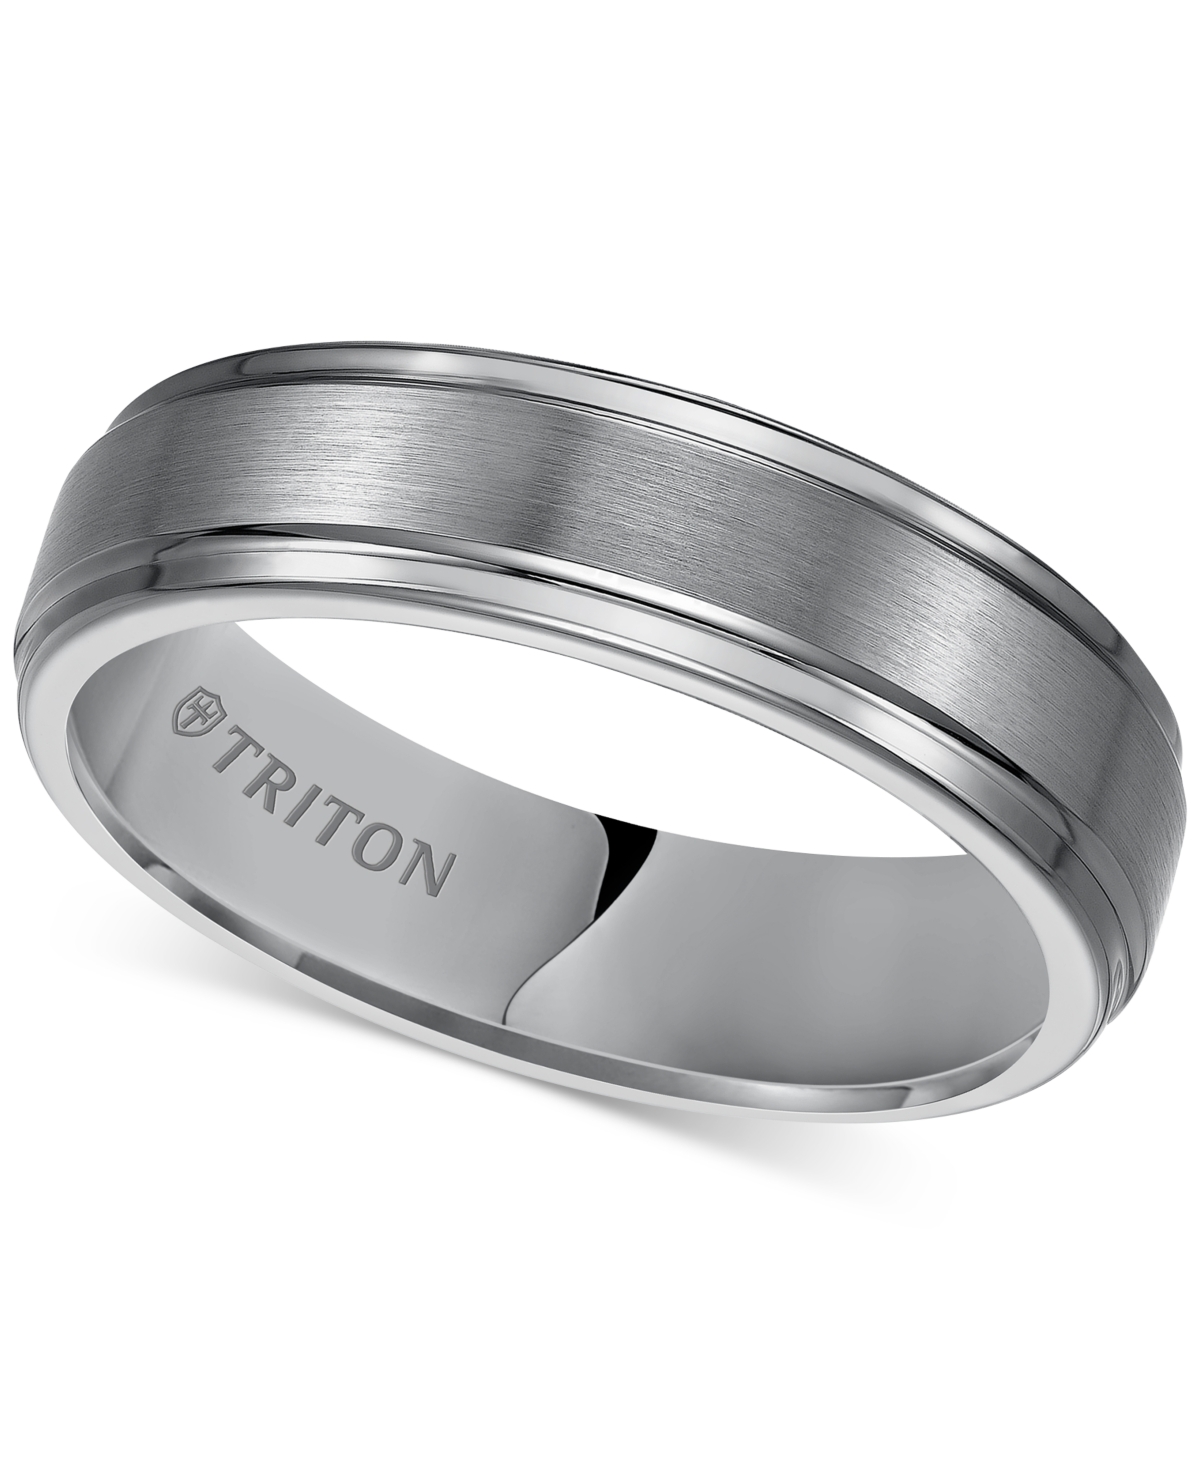 Men's Tungsten Carbide Ring, 6mm Comfort Fit Wedding Band - Tungsten